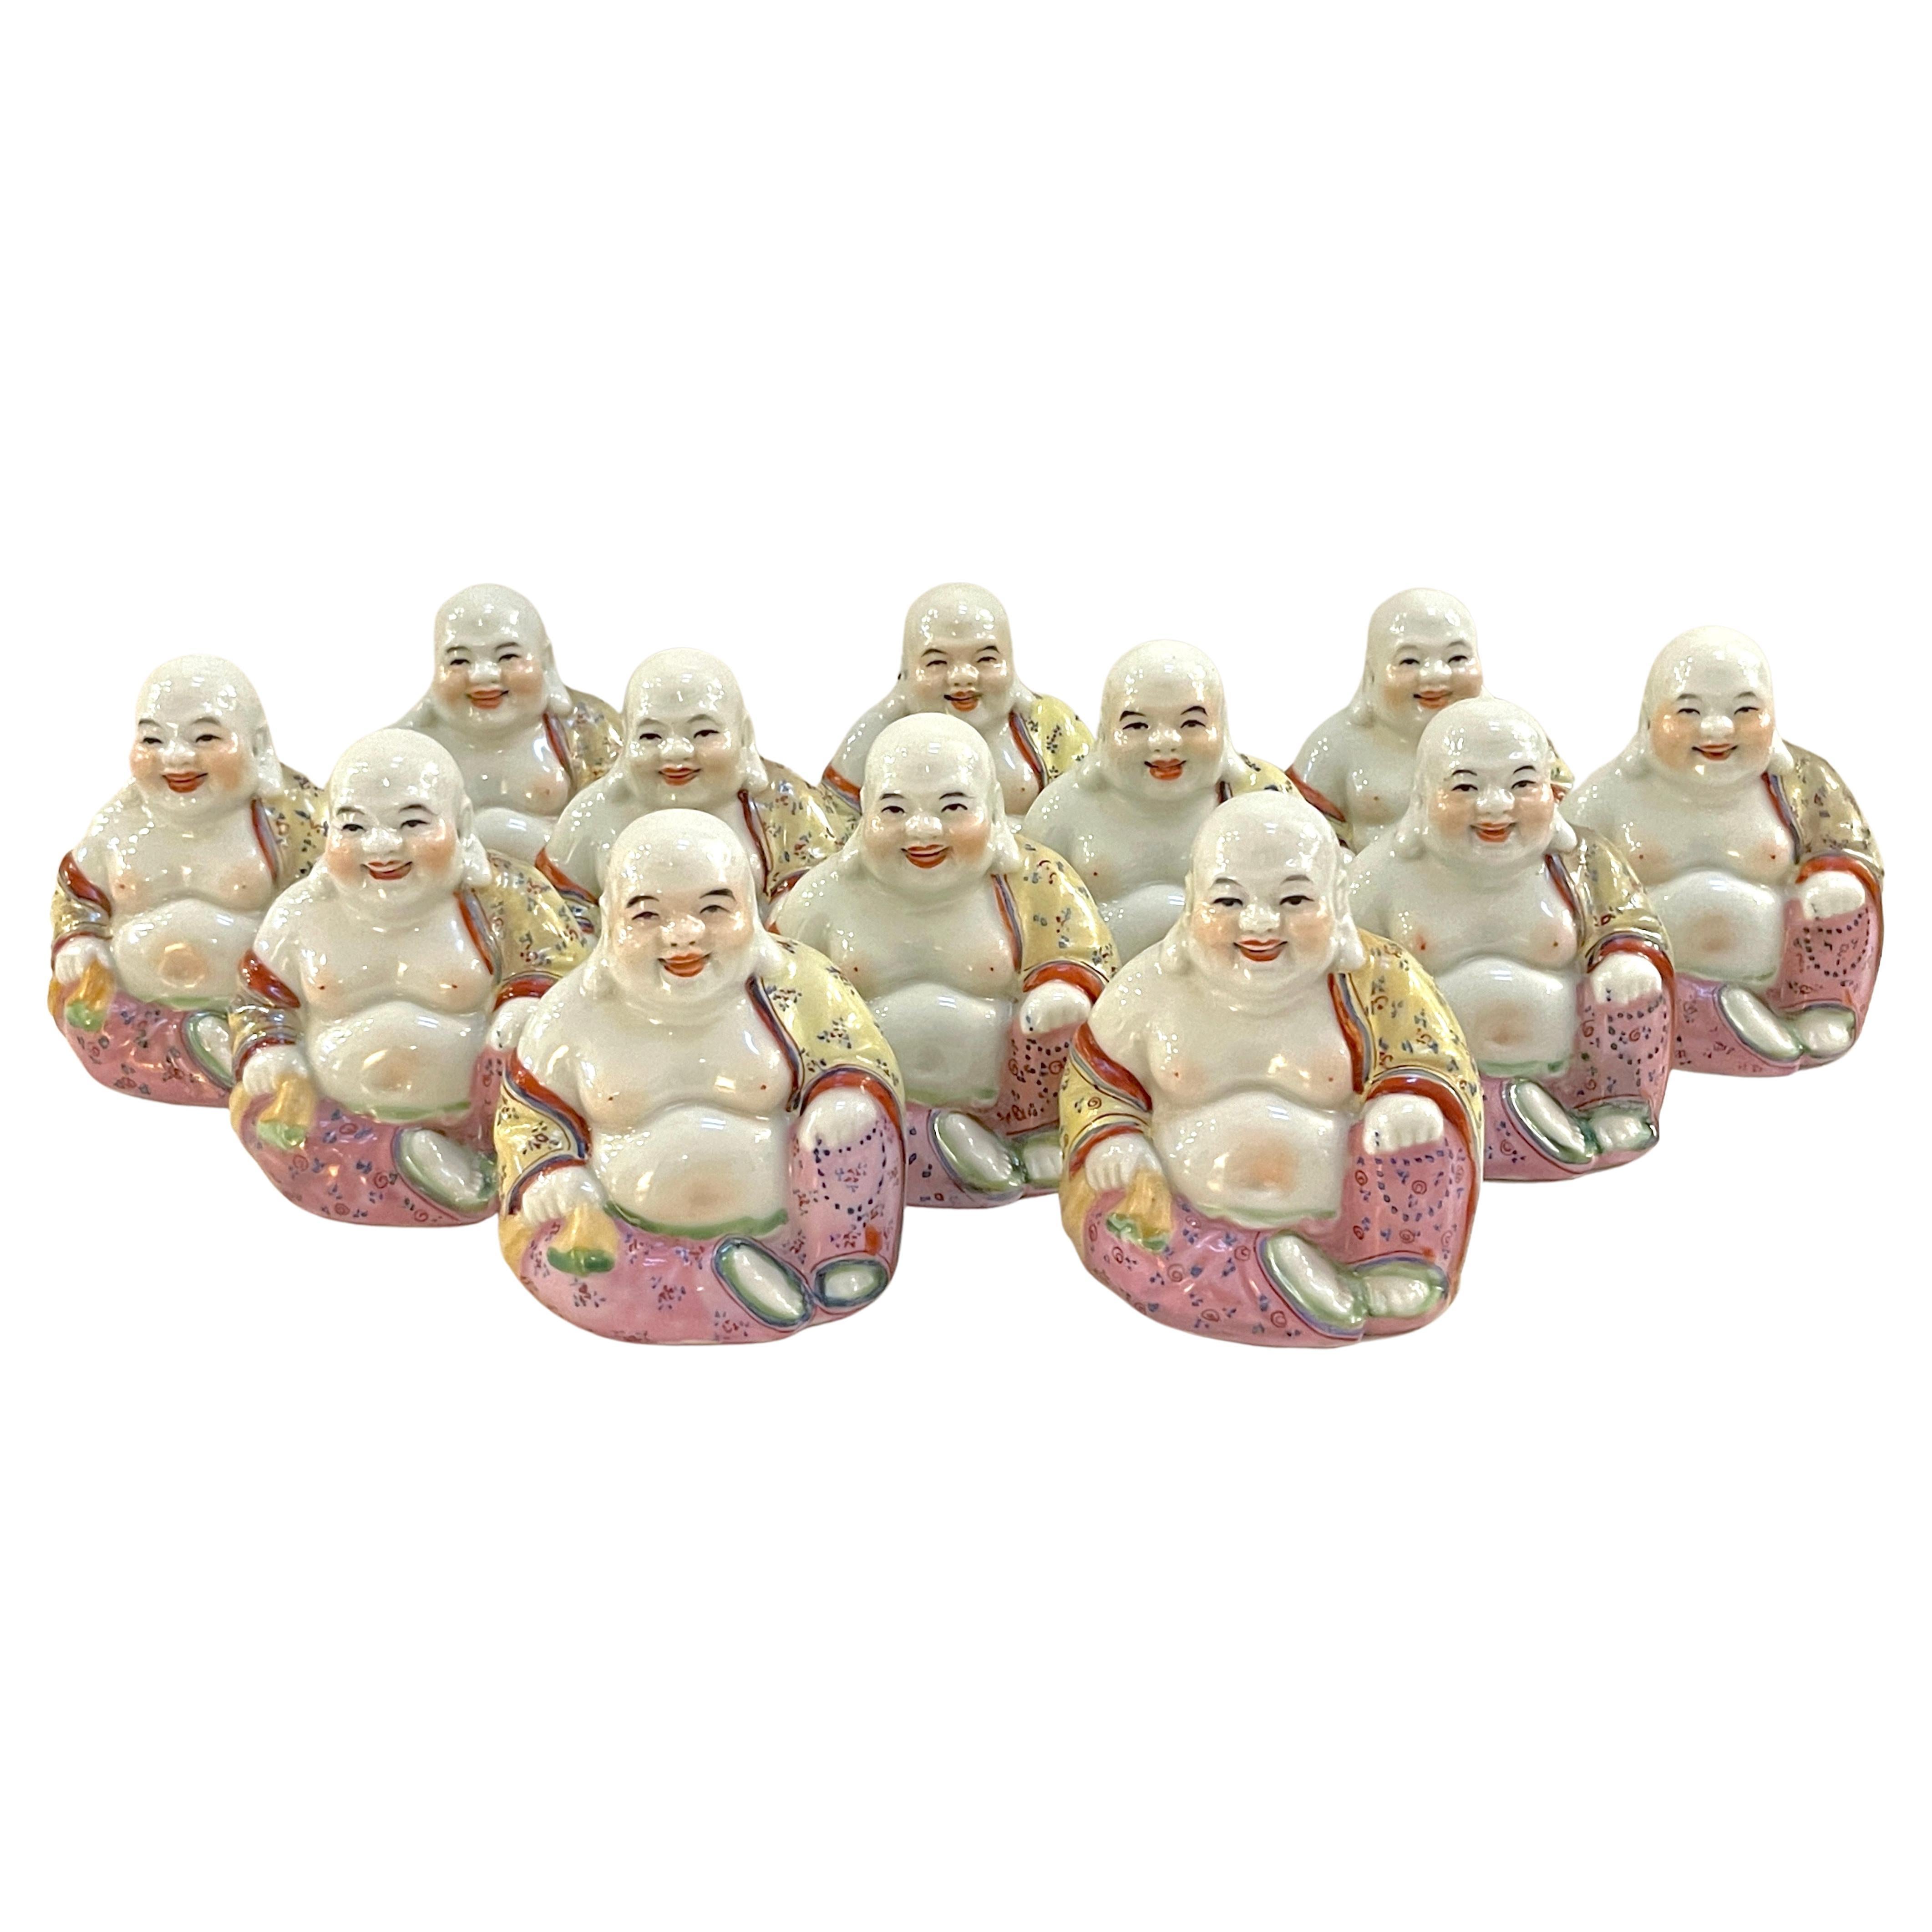 Collection de 12 Bouddhas diminutifs en porcelaine Famille-Verte d'exportation chinoise